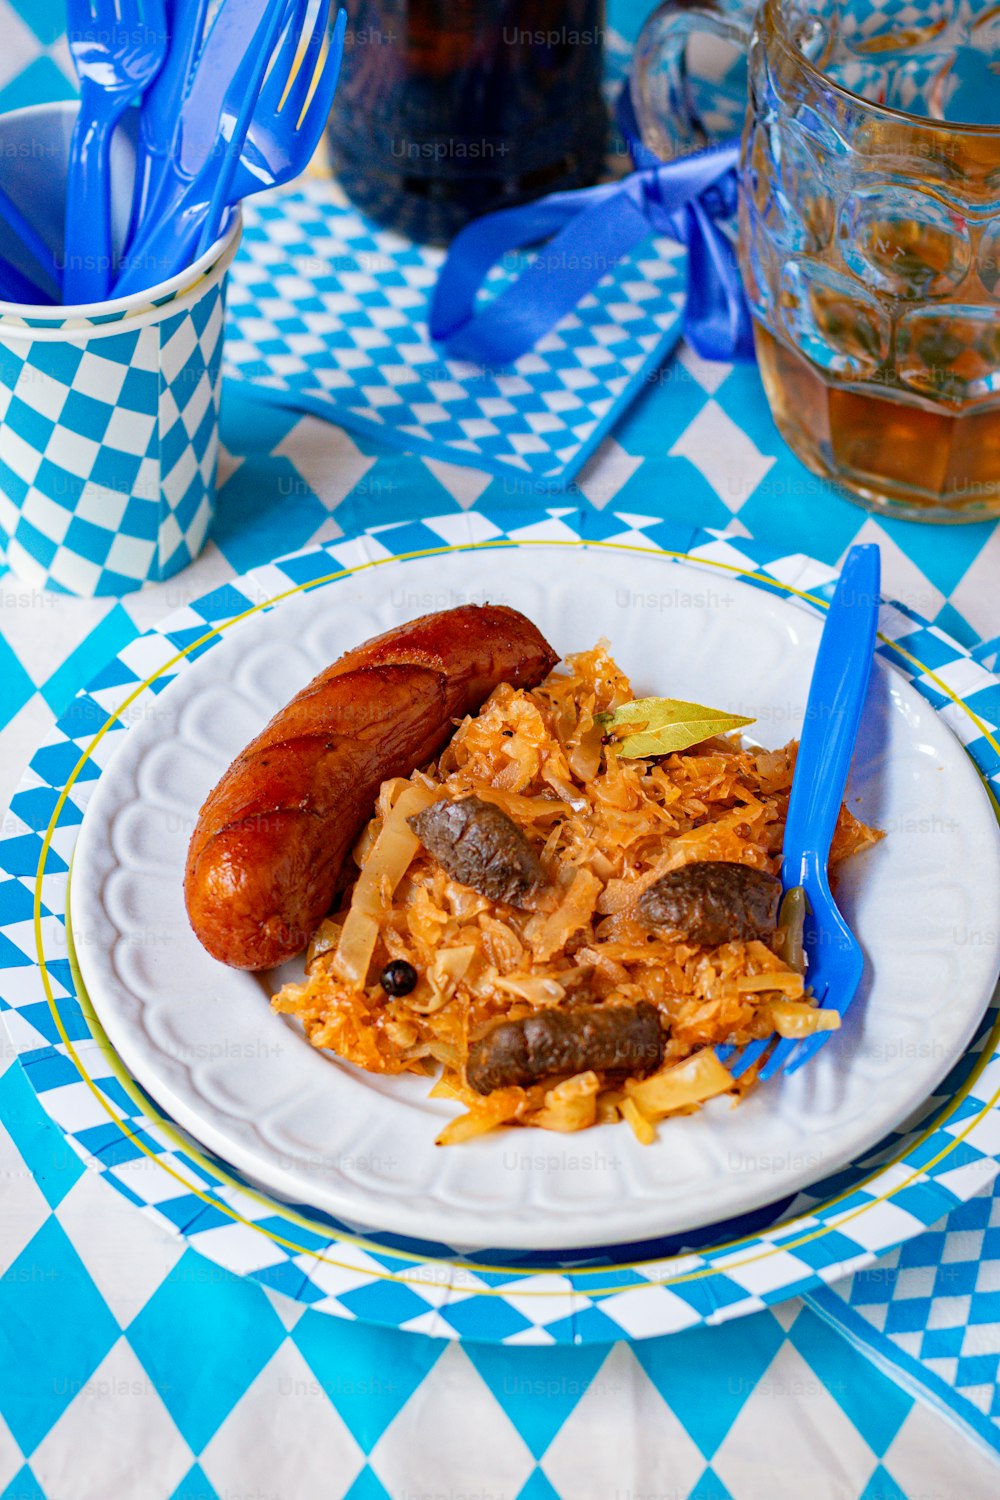 Un plato de comida en un mantel a cuadros azul y blanco